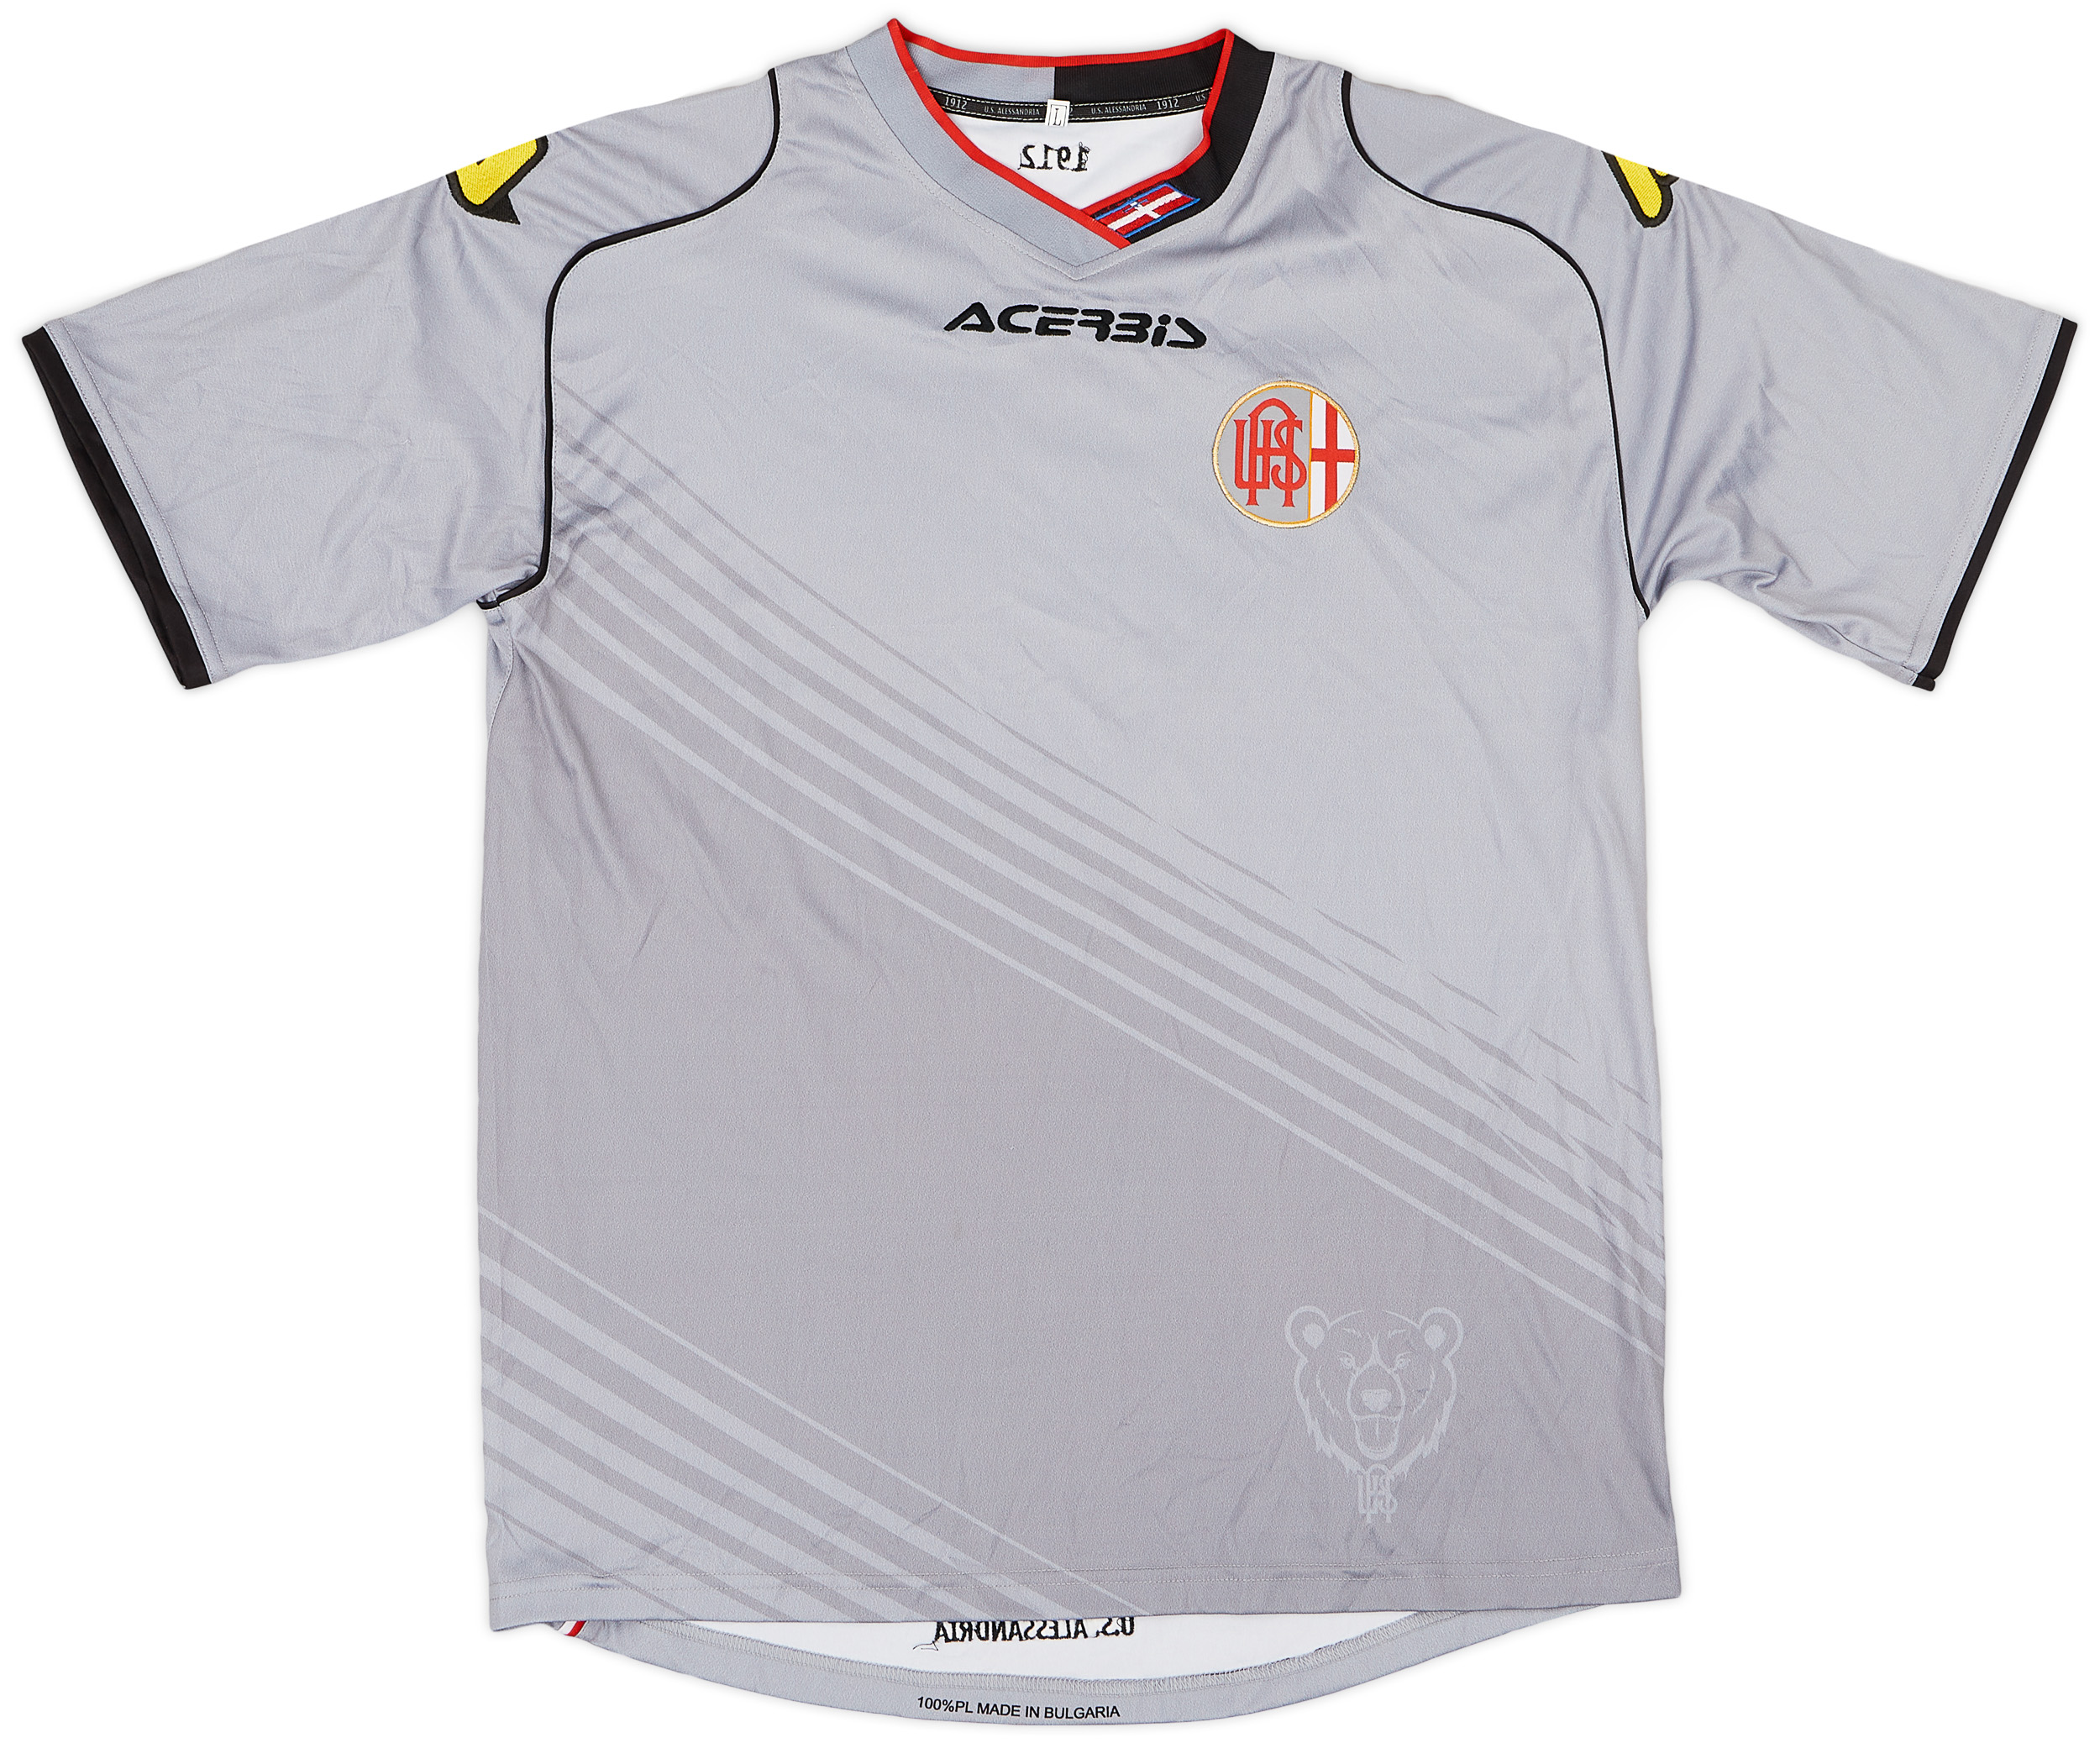 U.S. Alessandria Calcio 1912  home shirt  (Original)